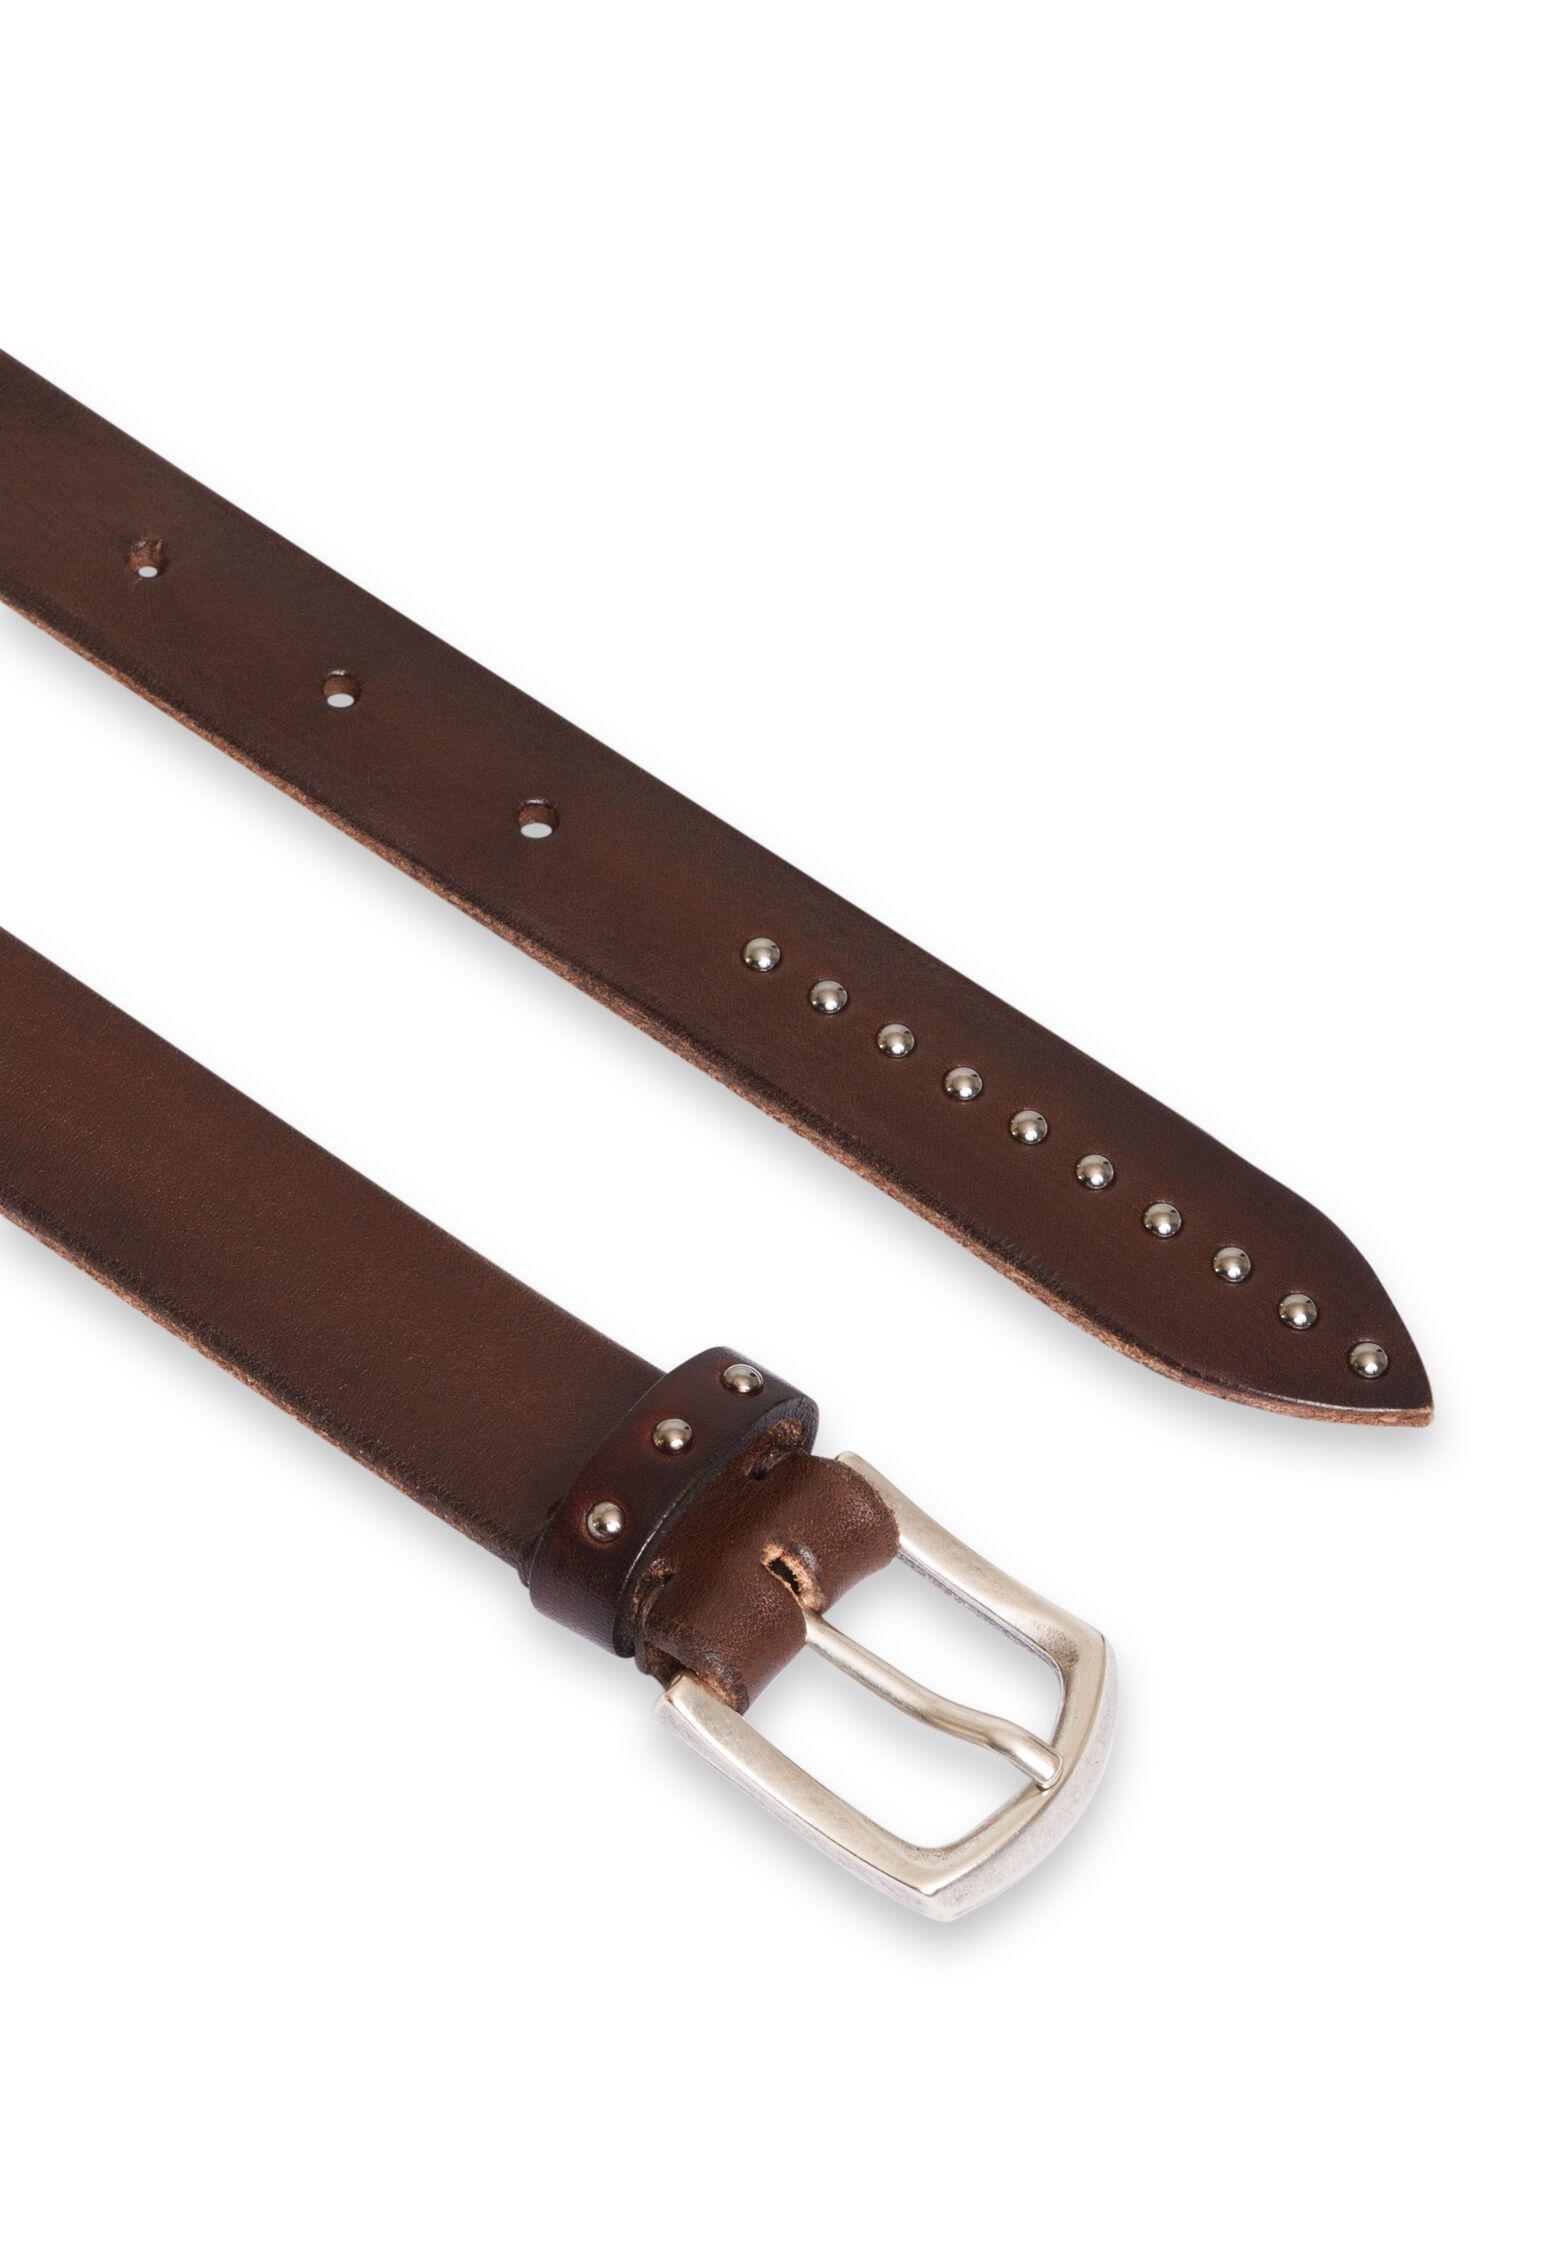 Dark brown 100% leather belt